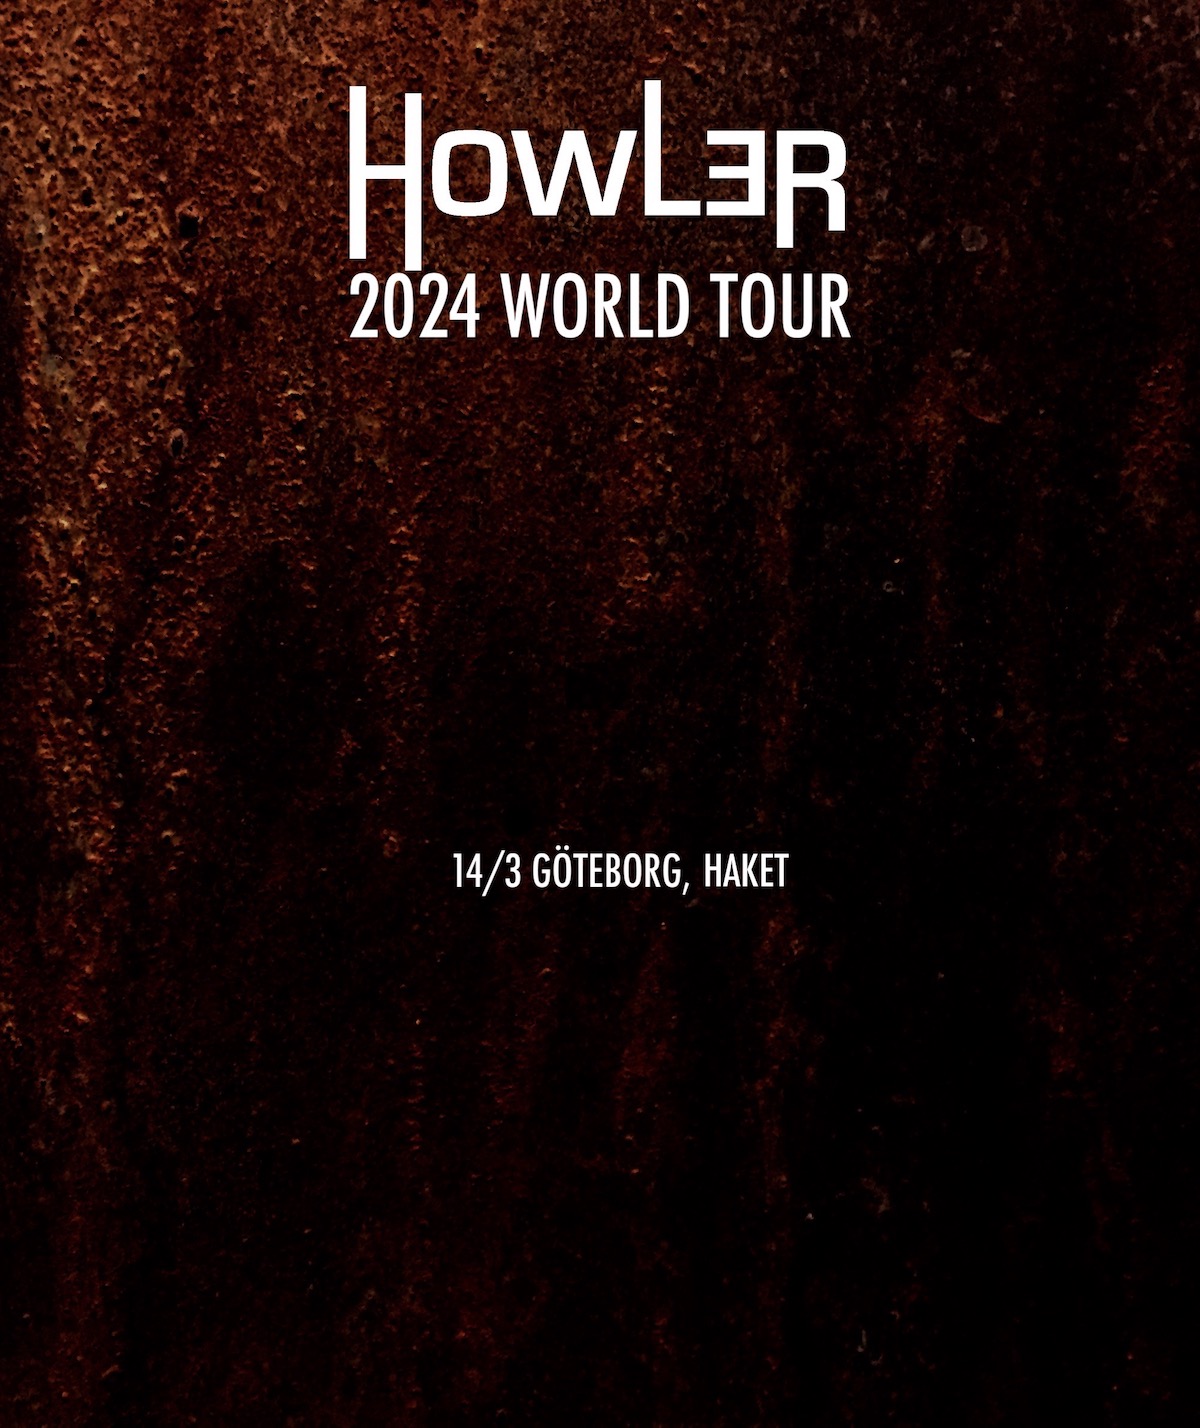 World Tour 2024